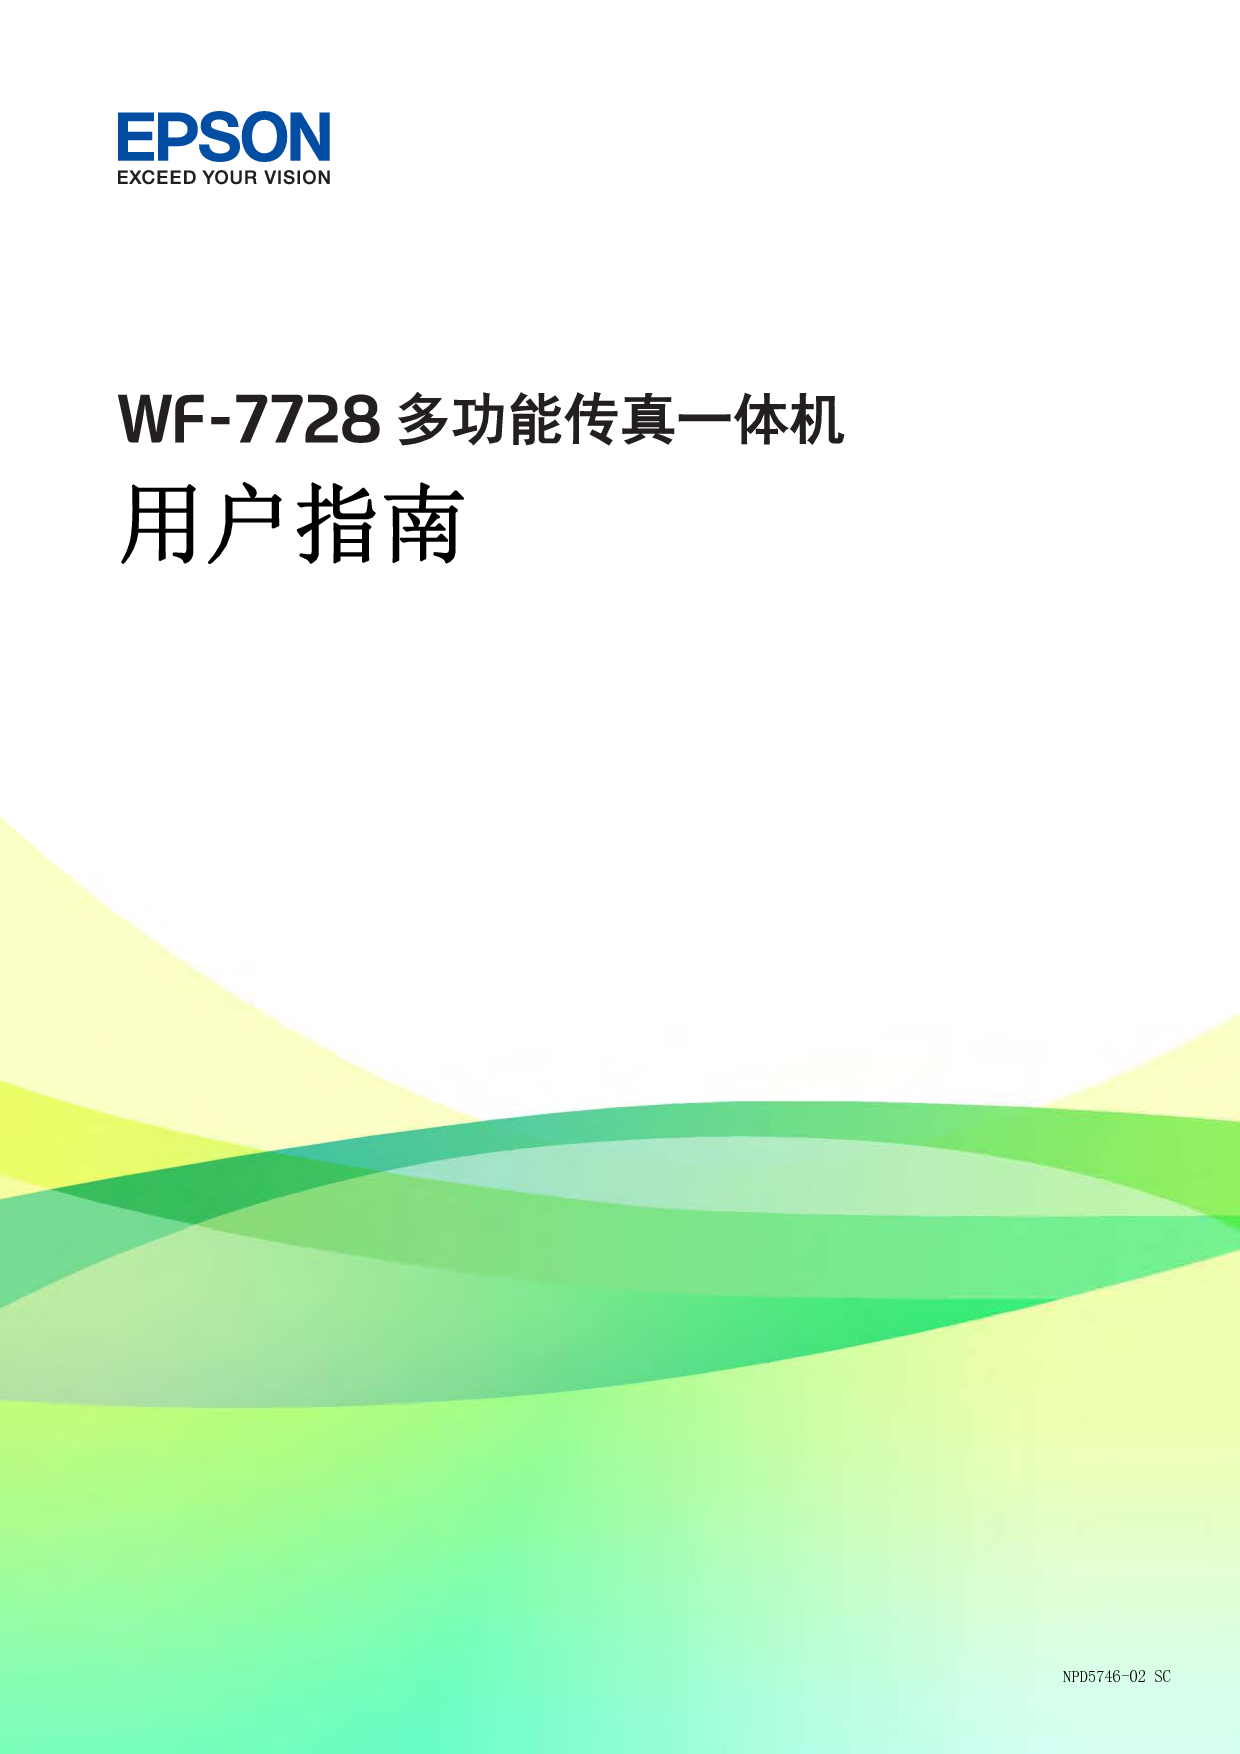 爱普生 Epson WF-7728 用户指南 封面